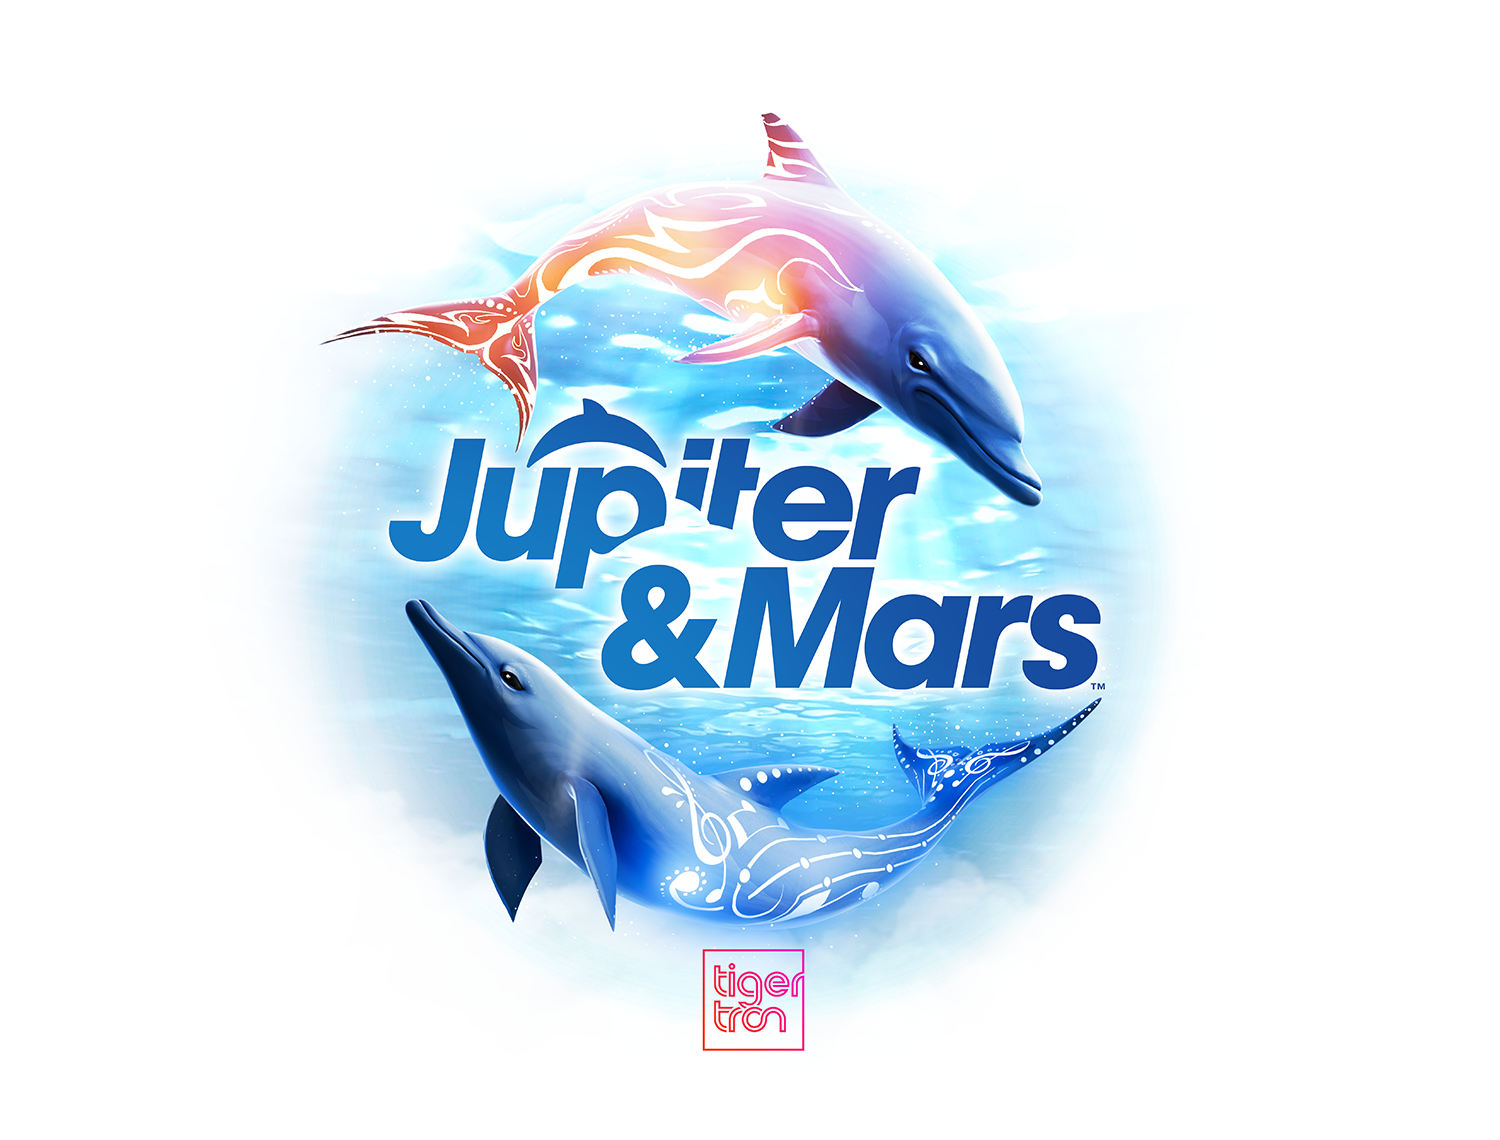  Jupiter &amp; Mars keyart, based on original composition by James Mielke, illustration and render by Shannon Trotman. 